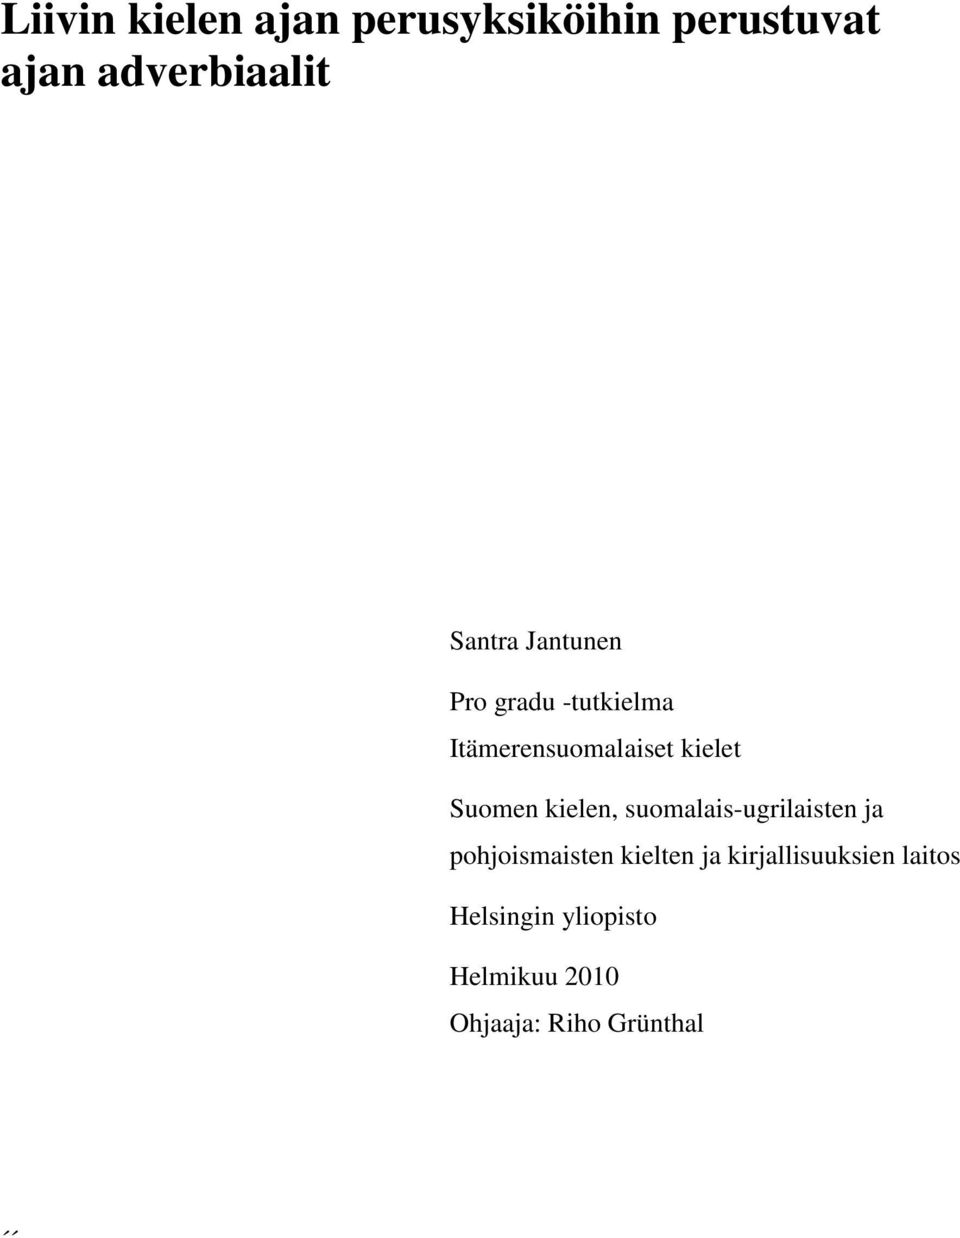 Suomen kielen, suomalais-ugrilaisten ja pohjoismaisten kielten ja